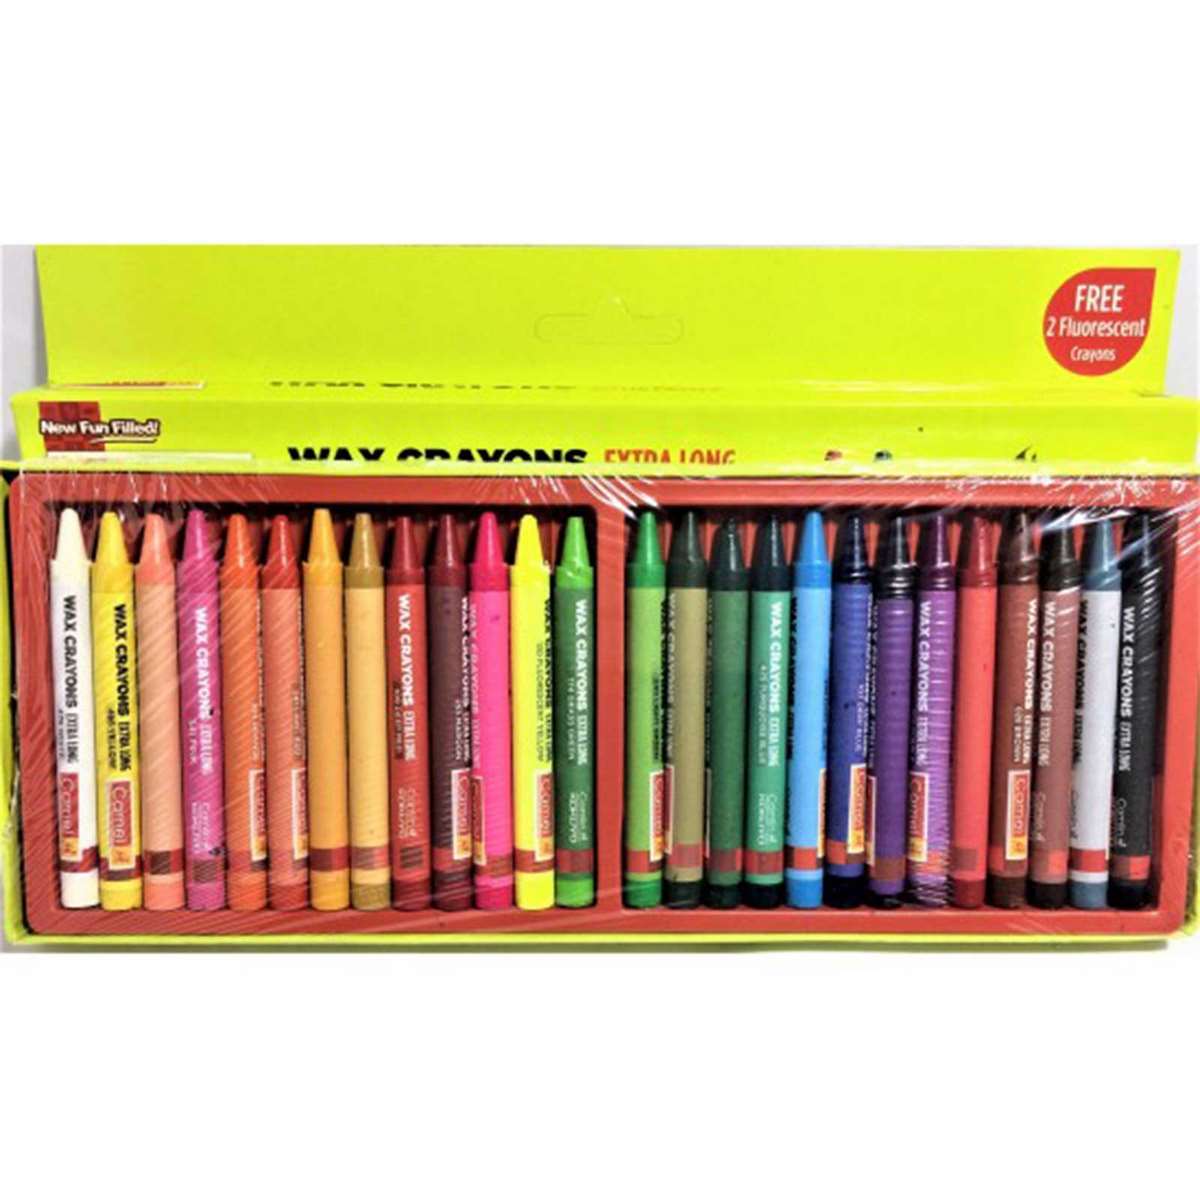 Wax Crayons (Extra Long) 4522547 12Shades Box Camlin